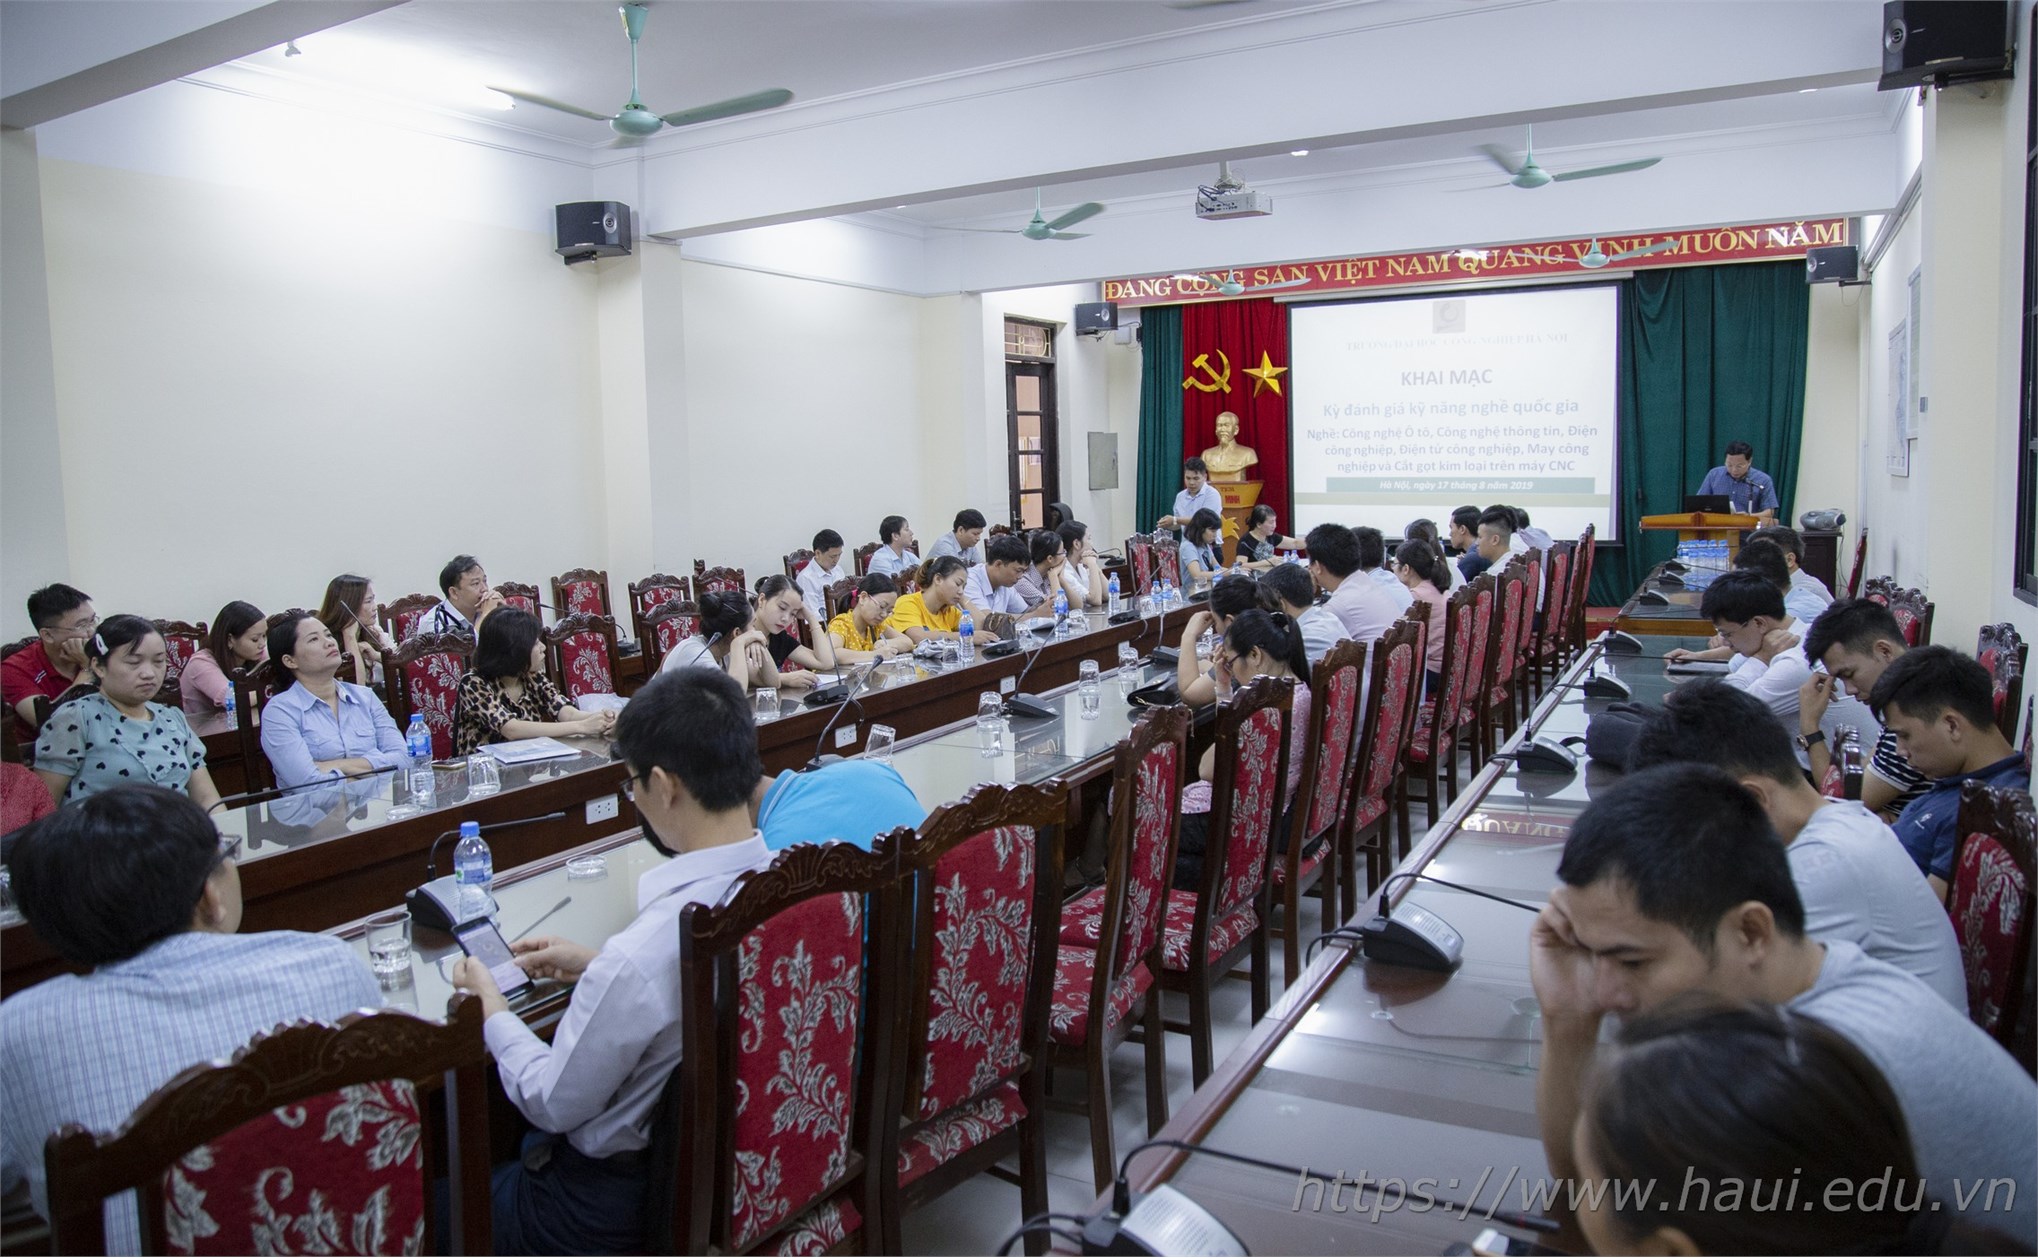 Trường Đại học Công nghiệp Hà Nội tổ chức kỳ đánh giá kỹ năng nghề quốc gia tháng 8 năm 2019